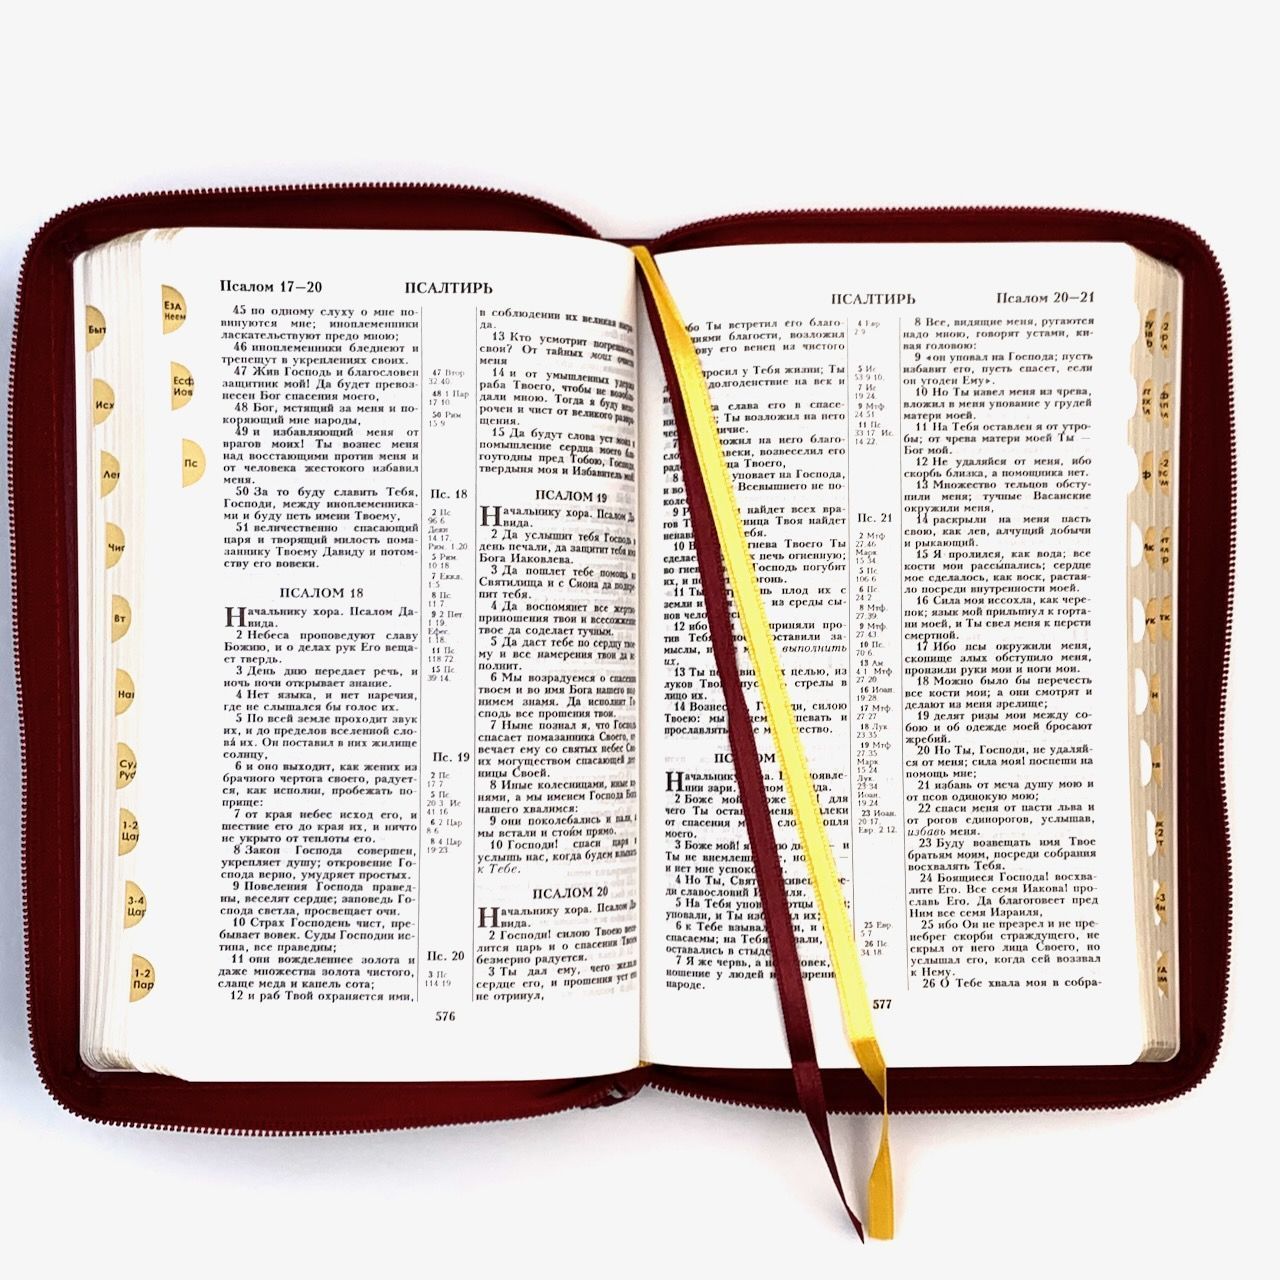 Библия 055zti код 23055-40 дизайн "золотое сердце", кожаный переплет на молнии с индексами, цвет красный, средний формат, 143*220 мм